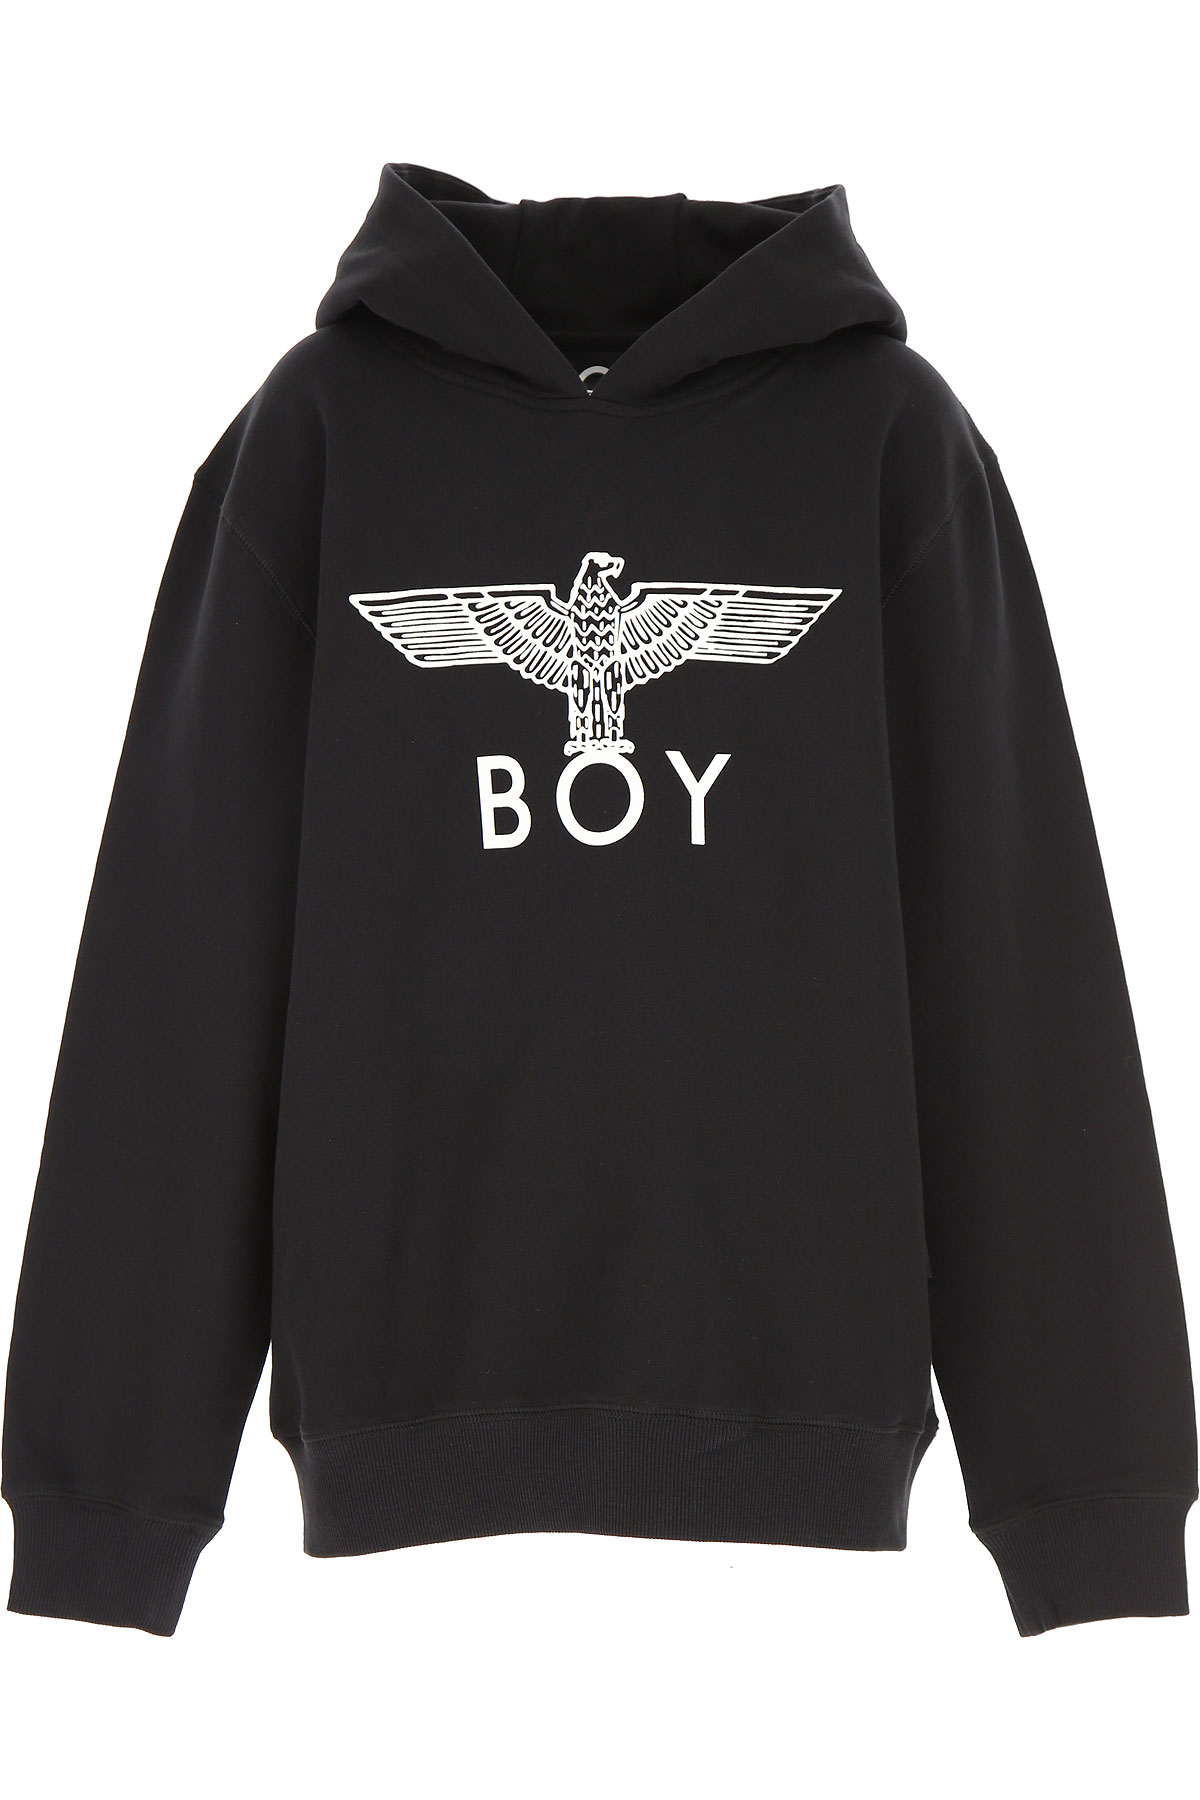 Boy London Kinder Sweatshirt & Kapuzenpullover für Jungen Günstig im Sale, Schwarz, Baumwolle, 2017, 14Y 6Y 8Y